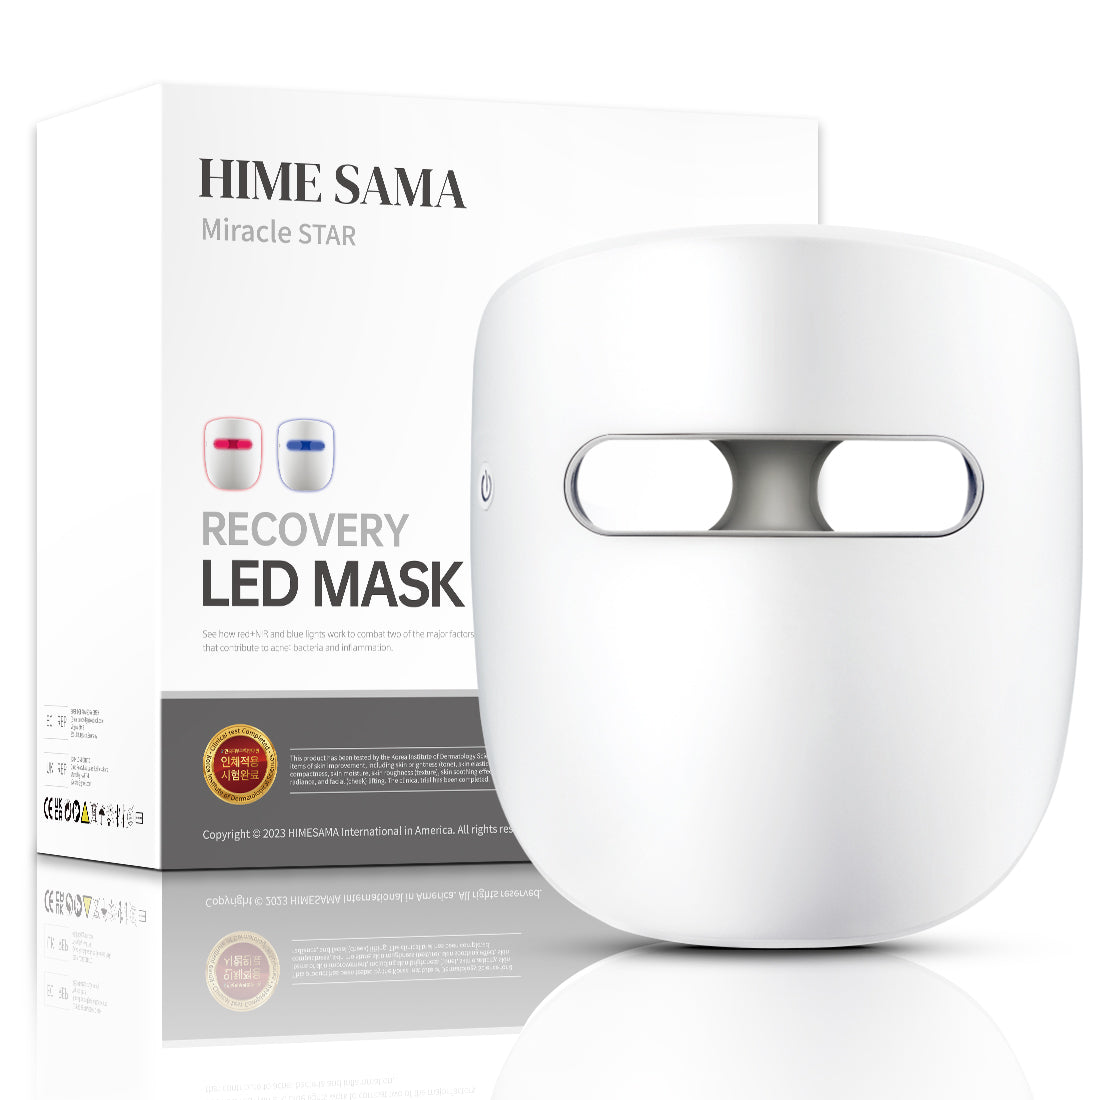 HIME SAMA - Maschera a LED per la terapia della luce del viso, luce infrarossa/rossa blu per il ringiovanimento della pelle del viso. (Miracle STAR)